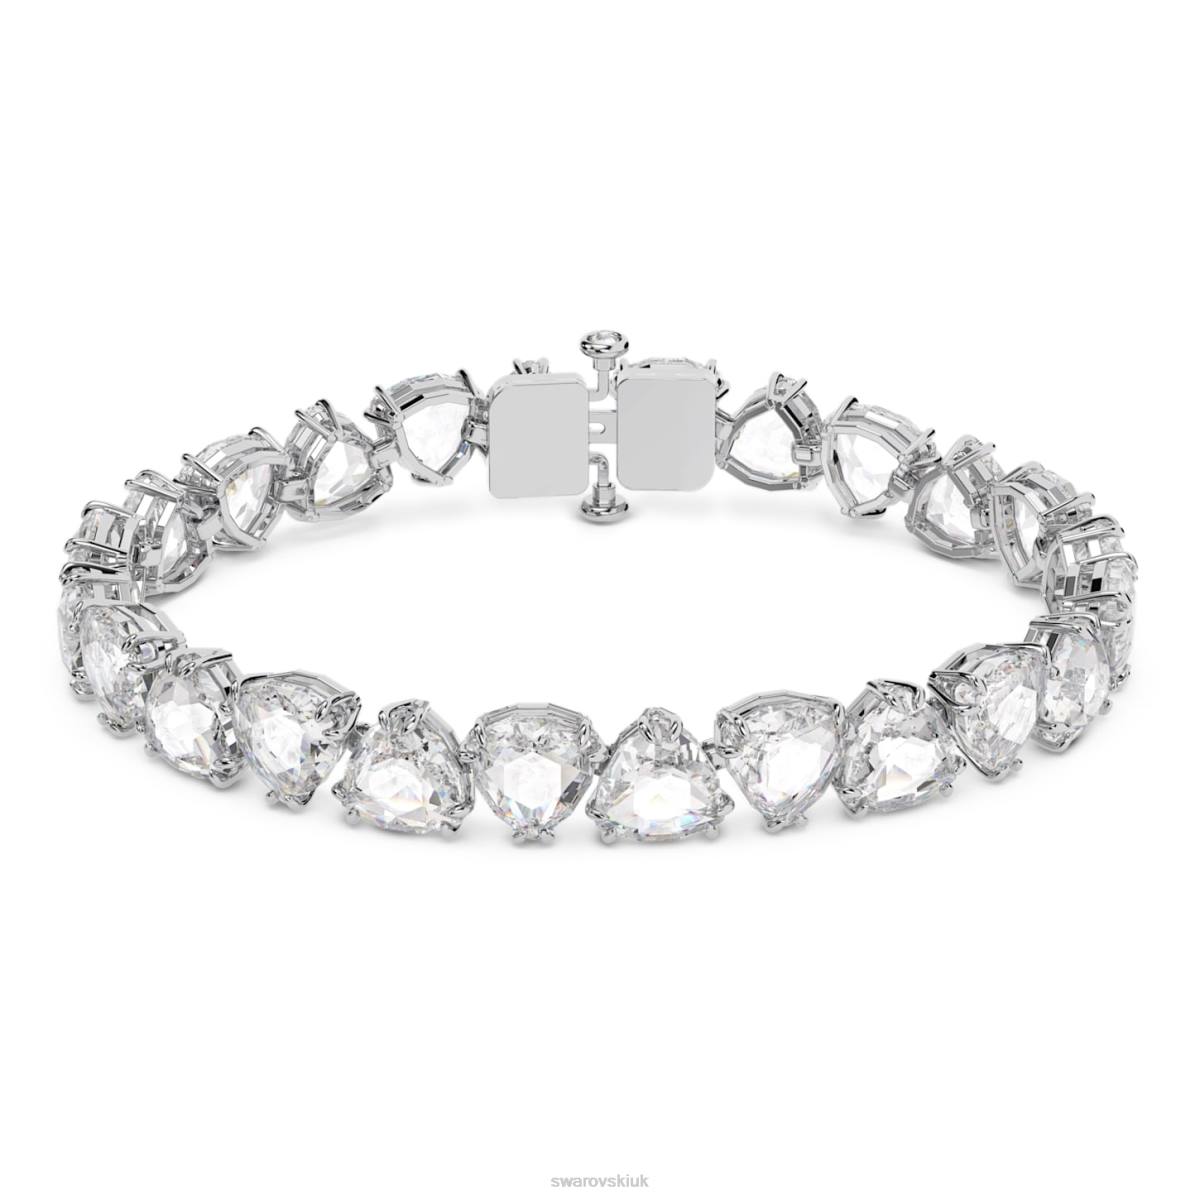 Jewelry Swarovski Millenia bracelet Trilliant cut, White, Rhodium plated 48JX571